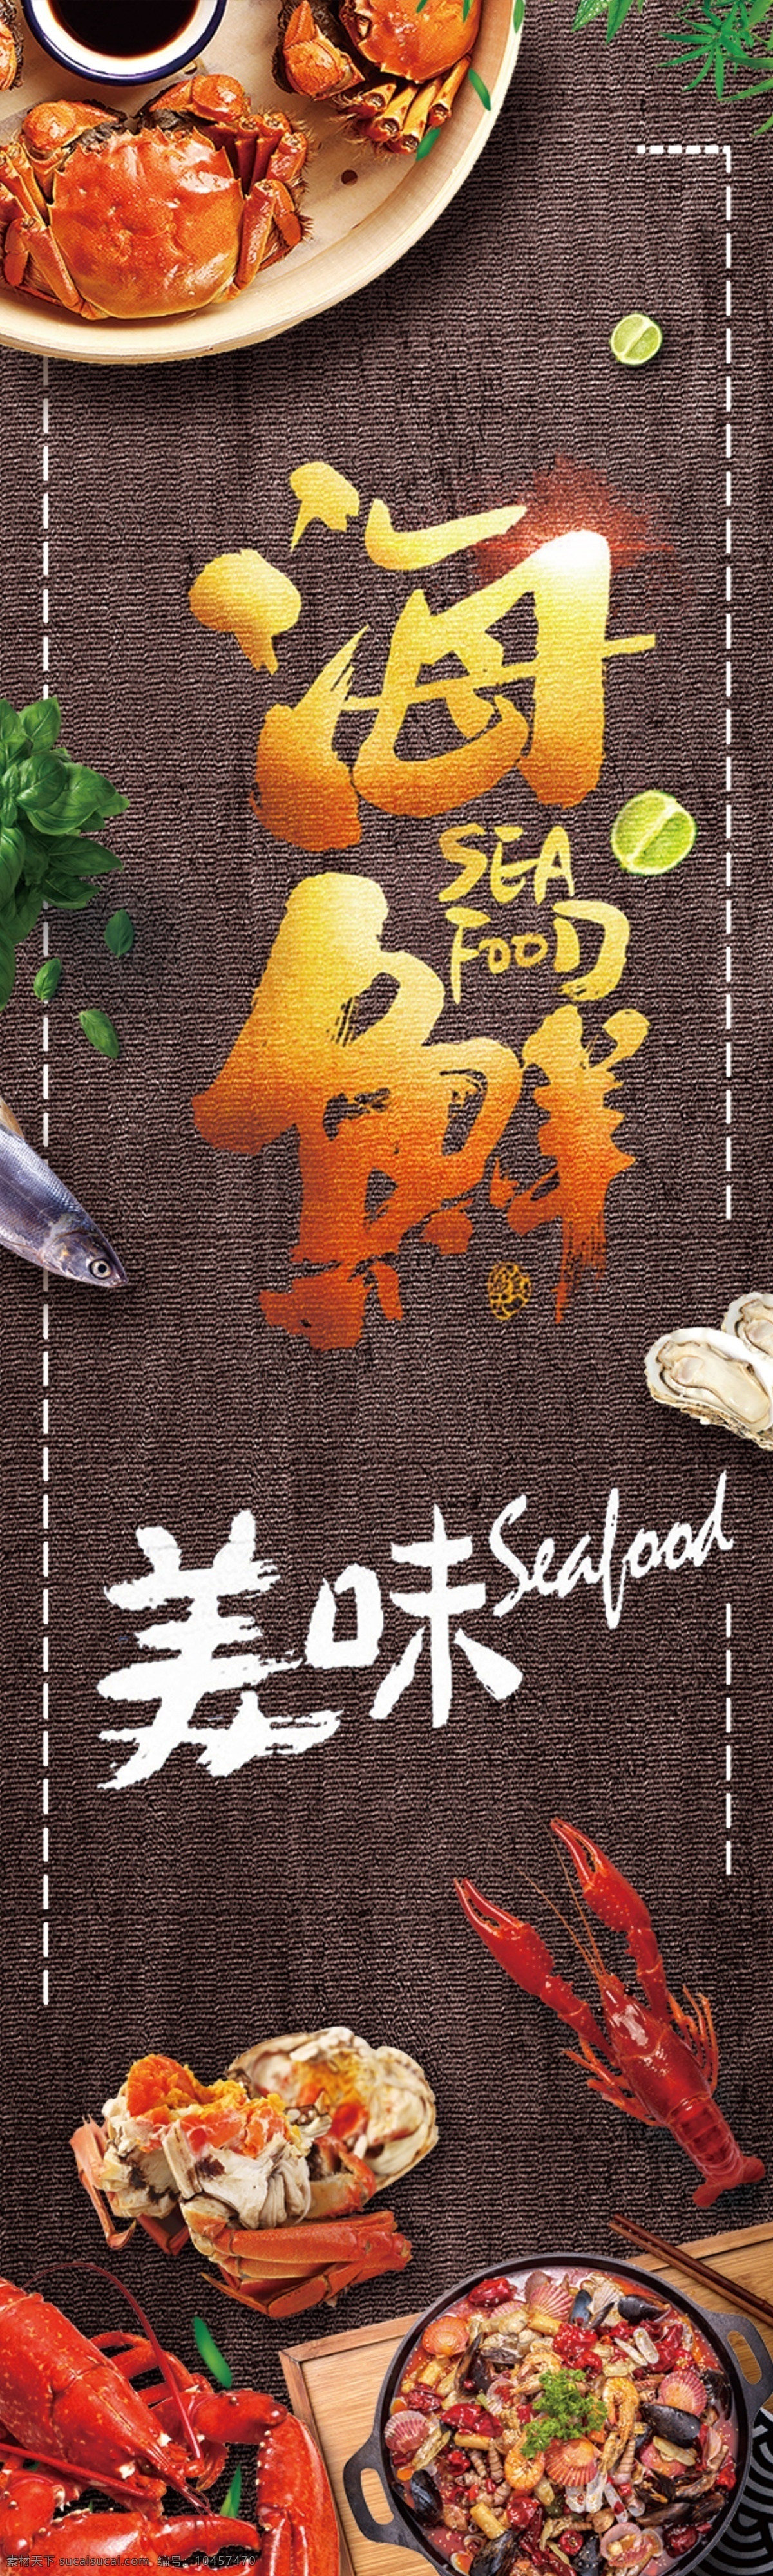 海鲜 美食 开业 活动 海报 宣传